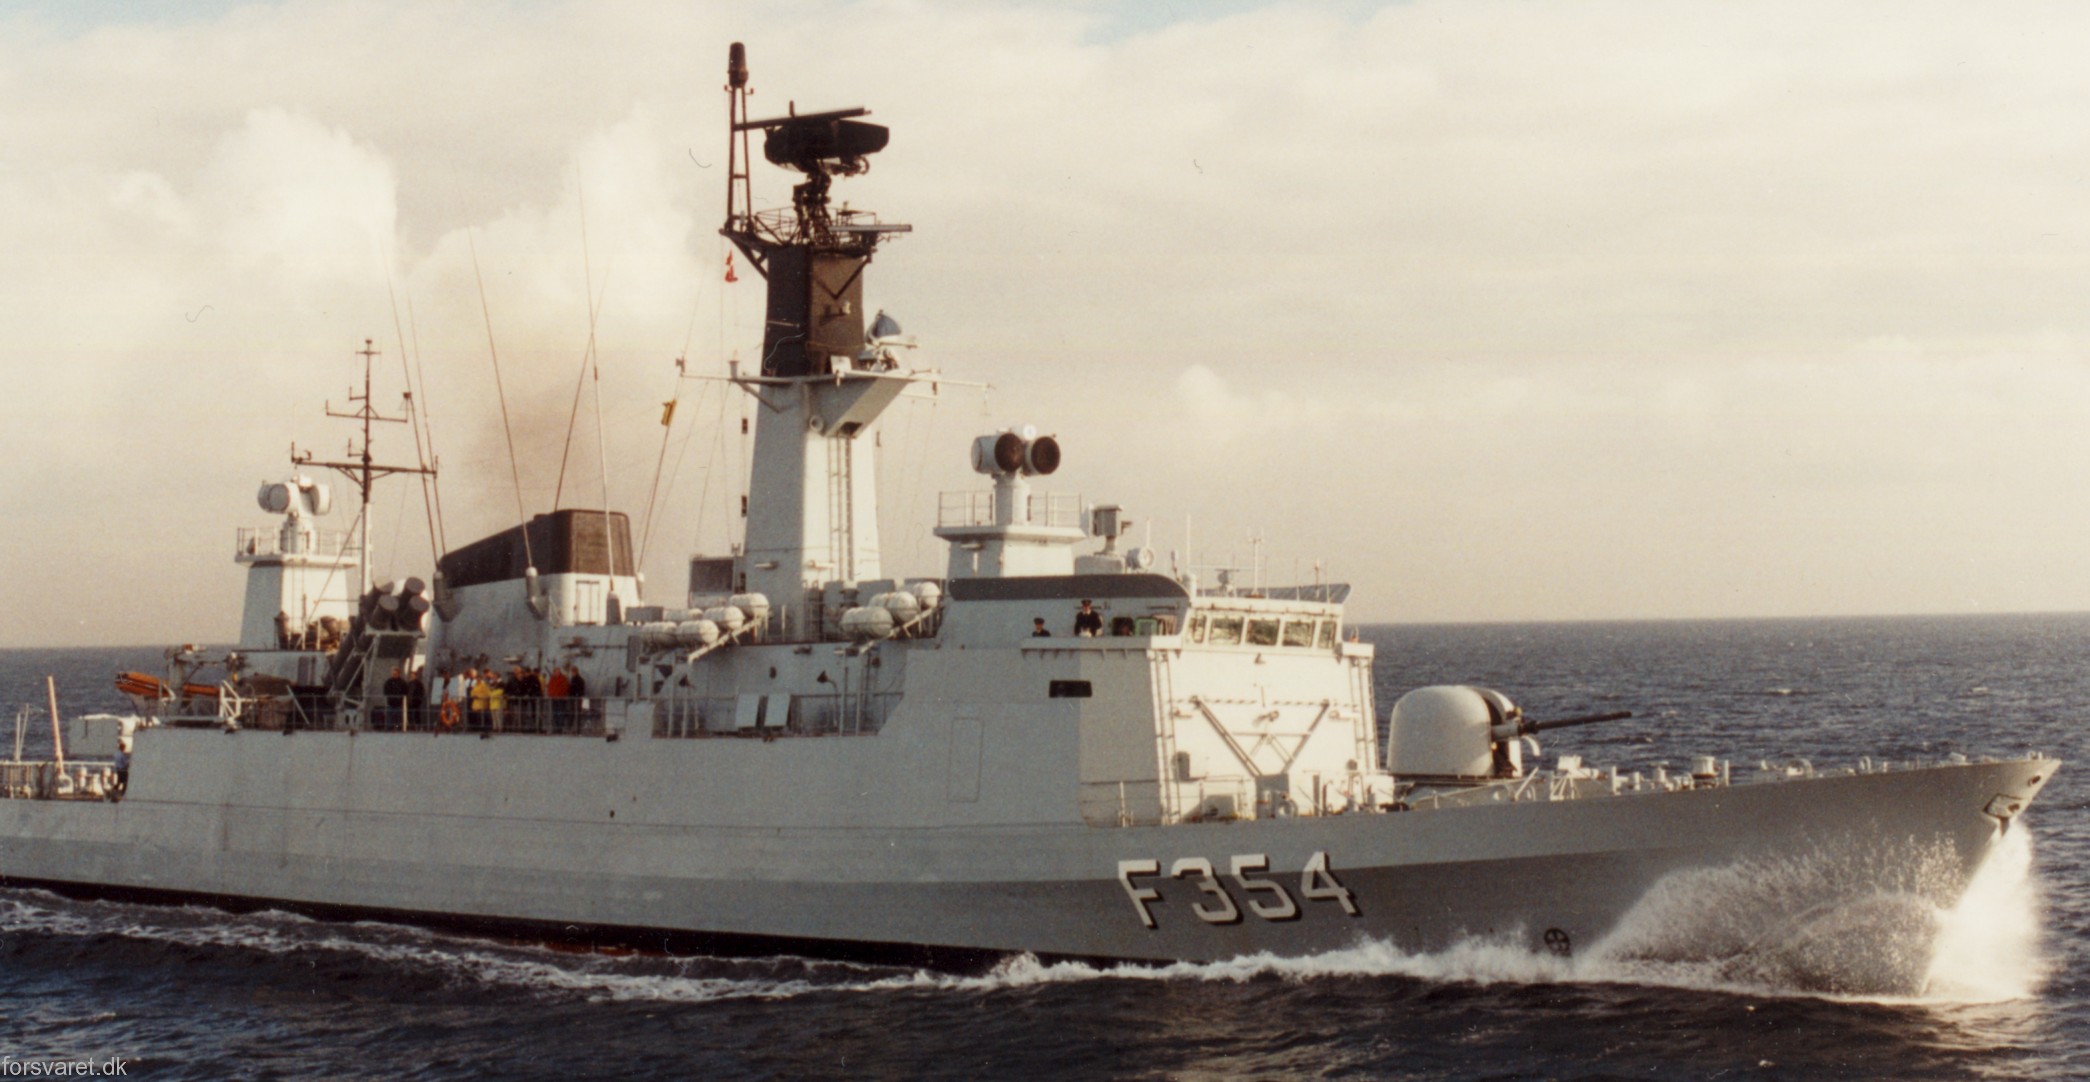 f-354 hdms niels juel class corvette royal danish navy kongelige danske marine kdm 88